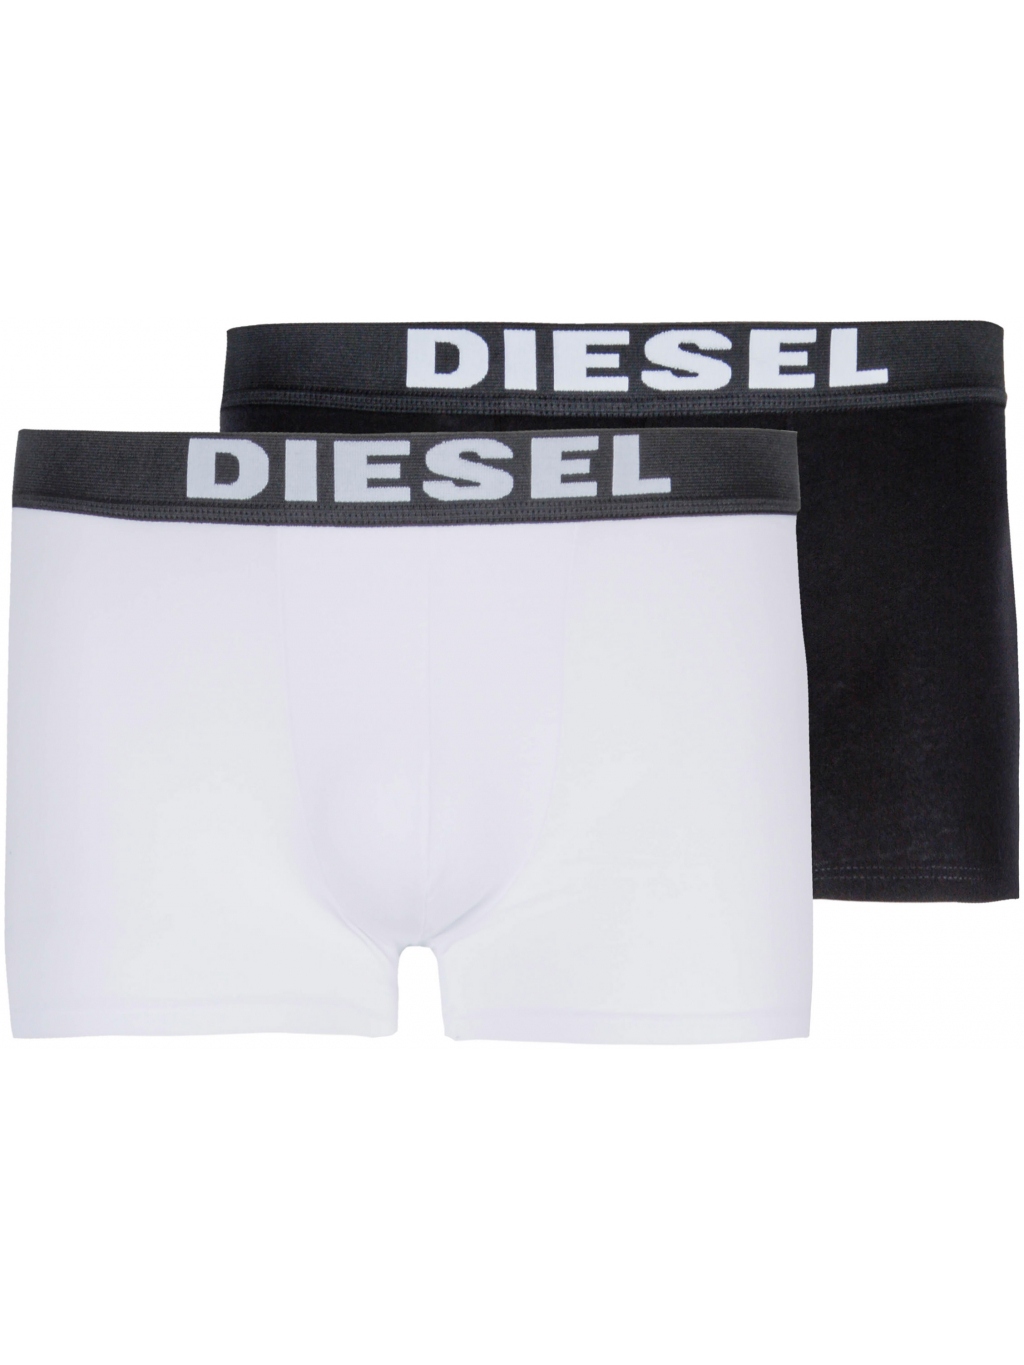 Pánské černé a bílé boxerky Diesel - set 2 ks - Fashion Shack